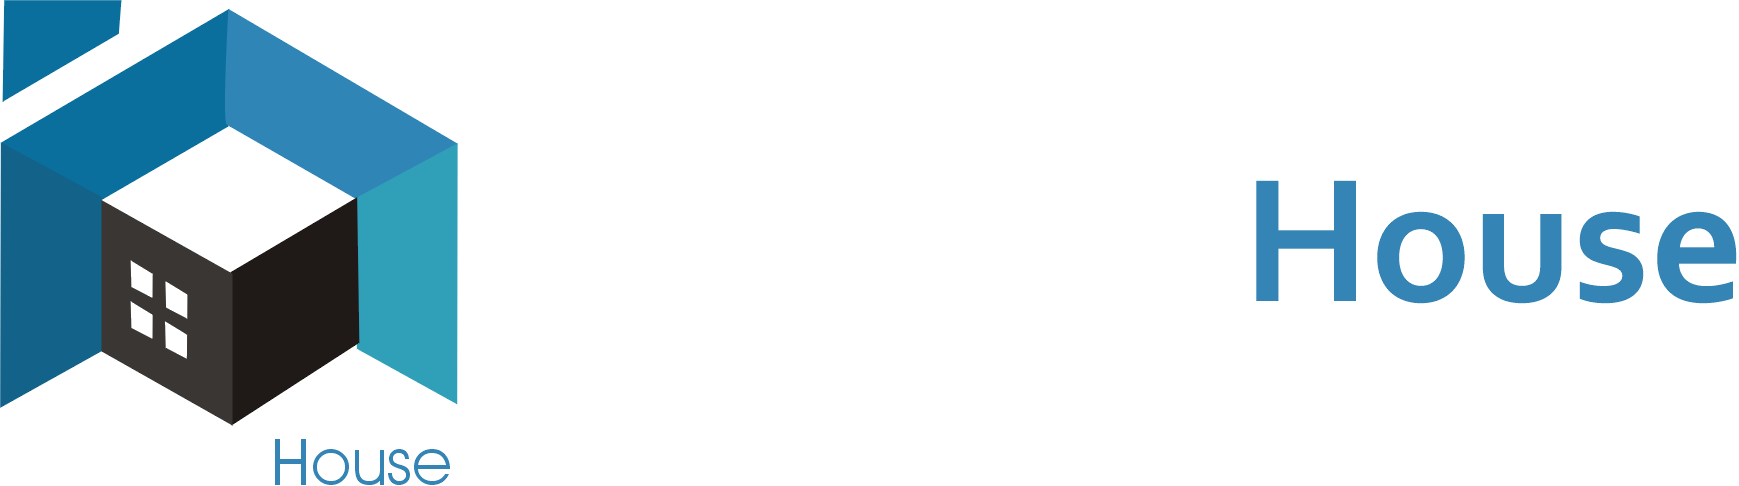 Web Soft House